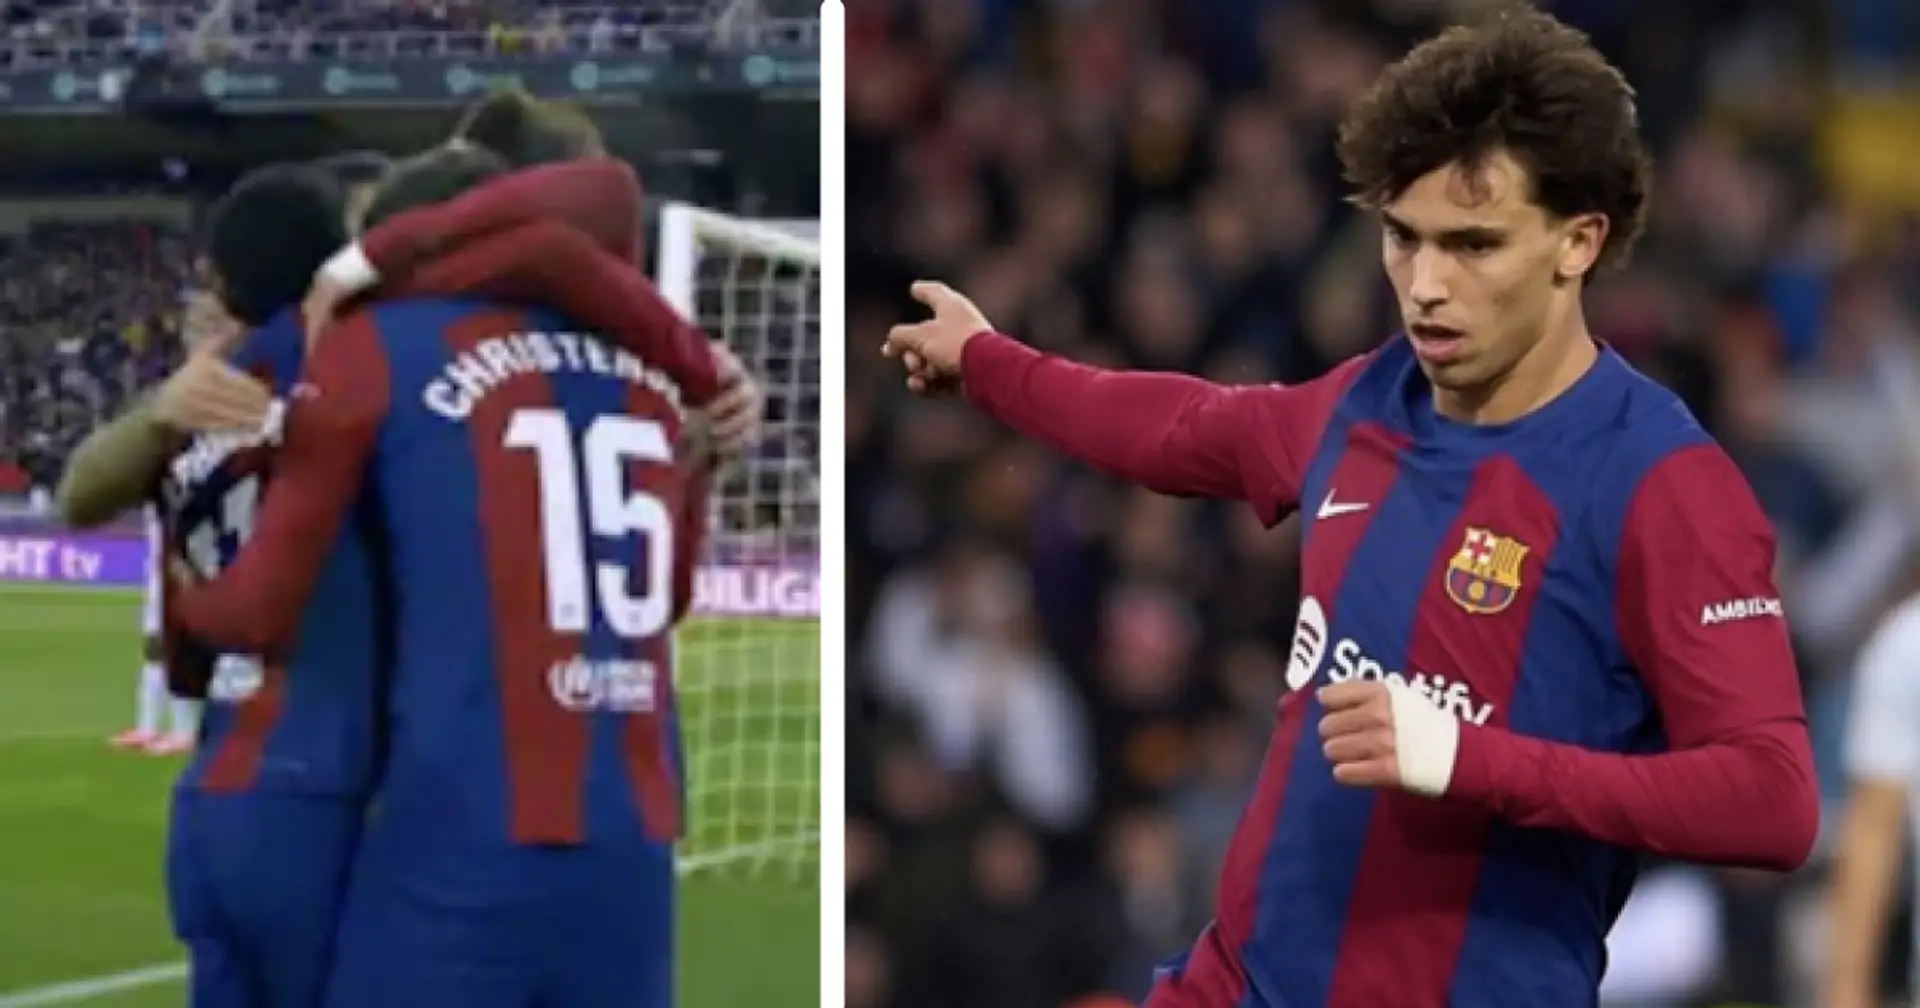 Joao Felix makes lovely gesture for Barca player after scoring v Getafe